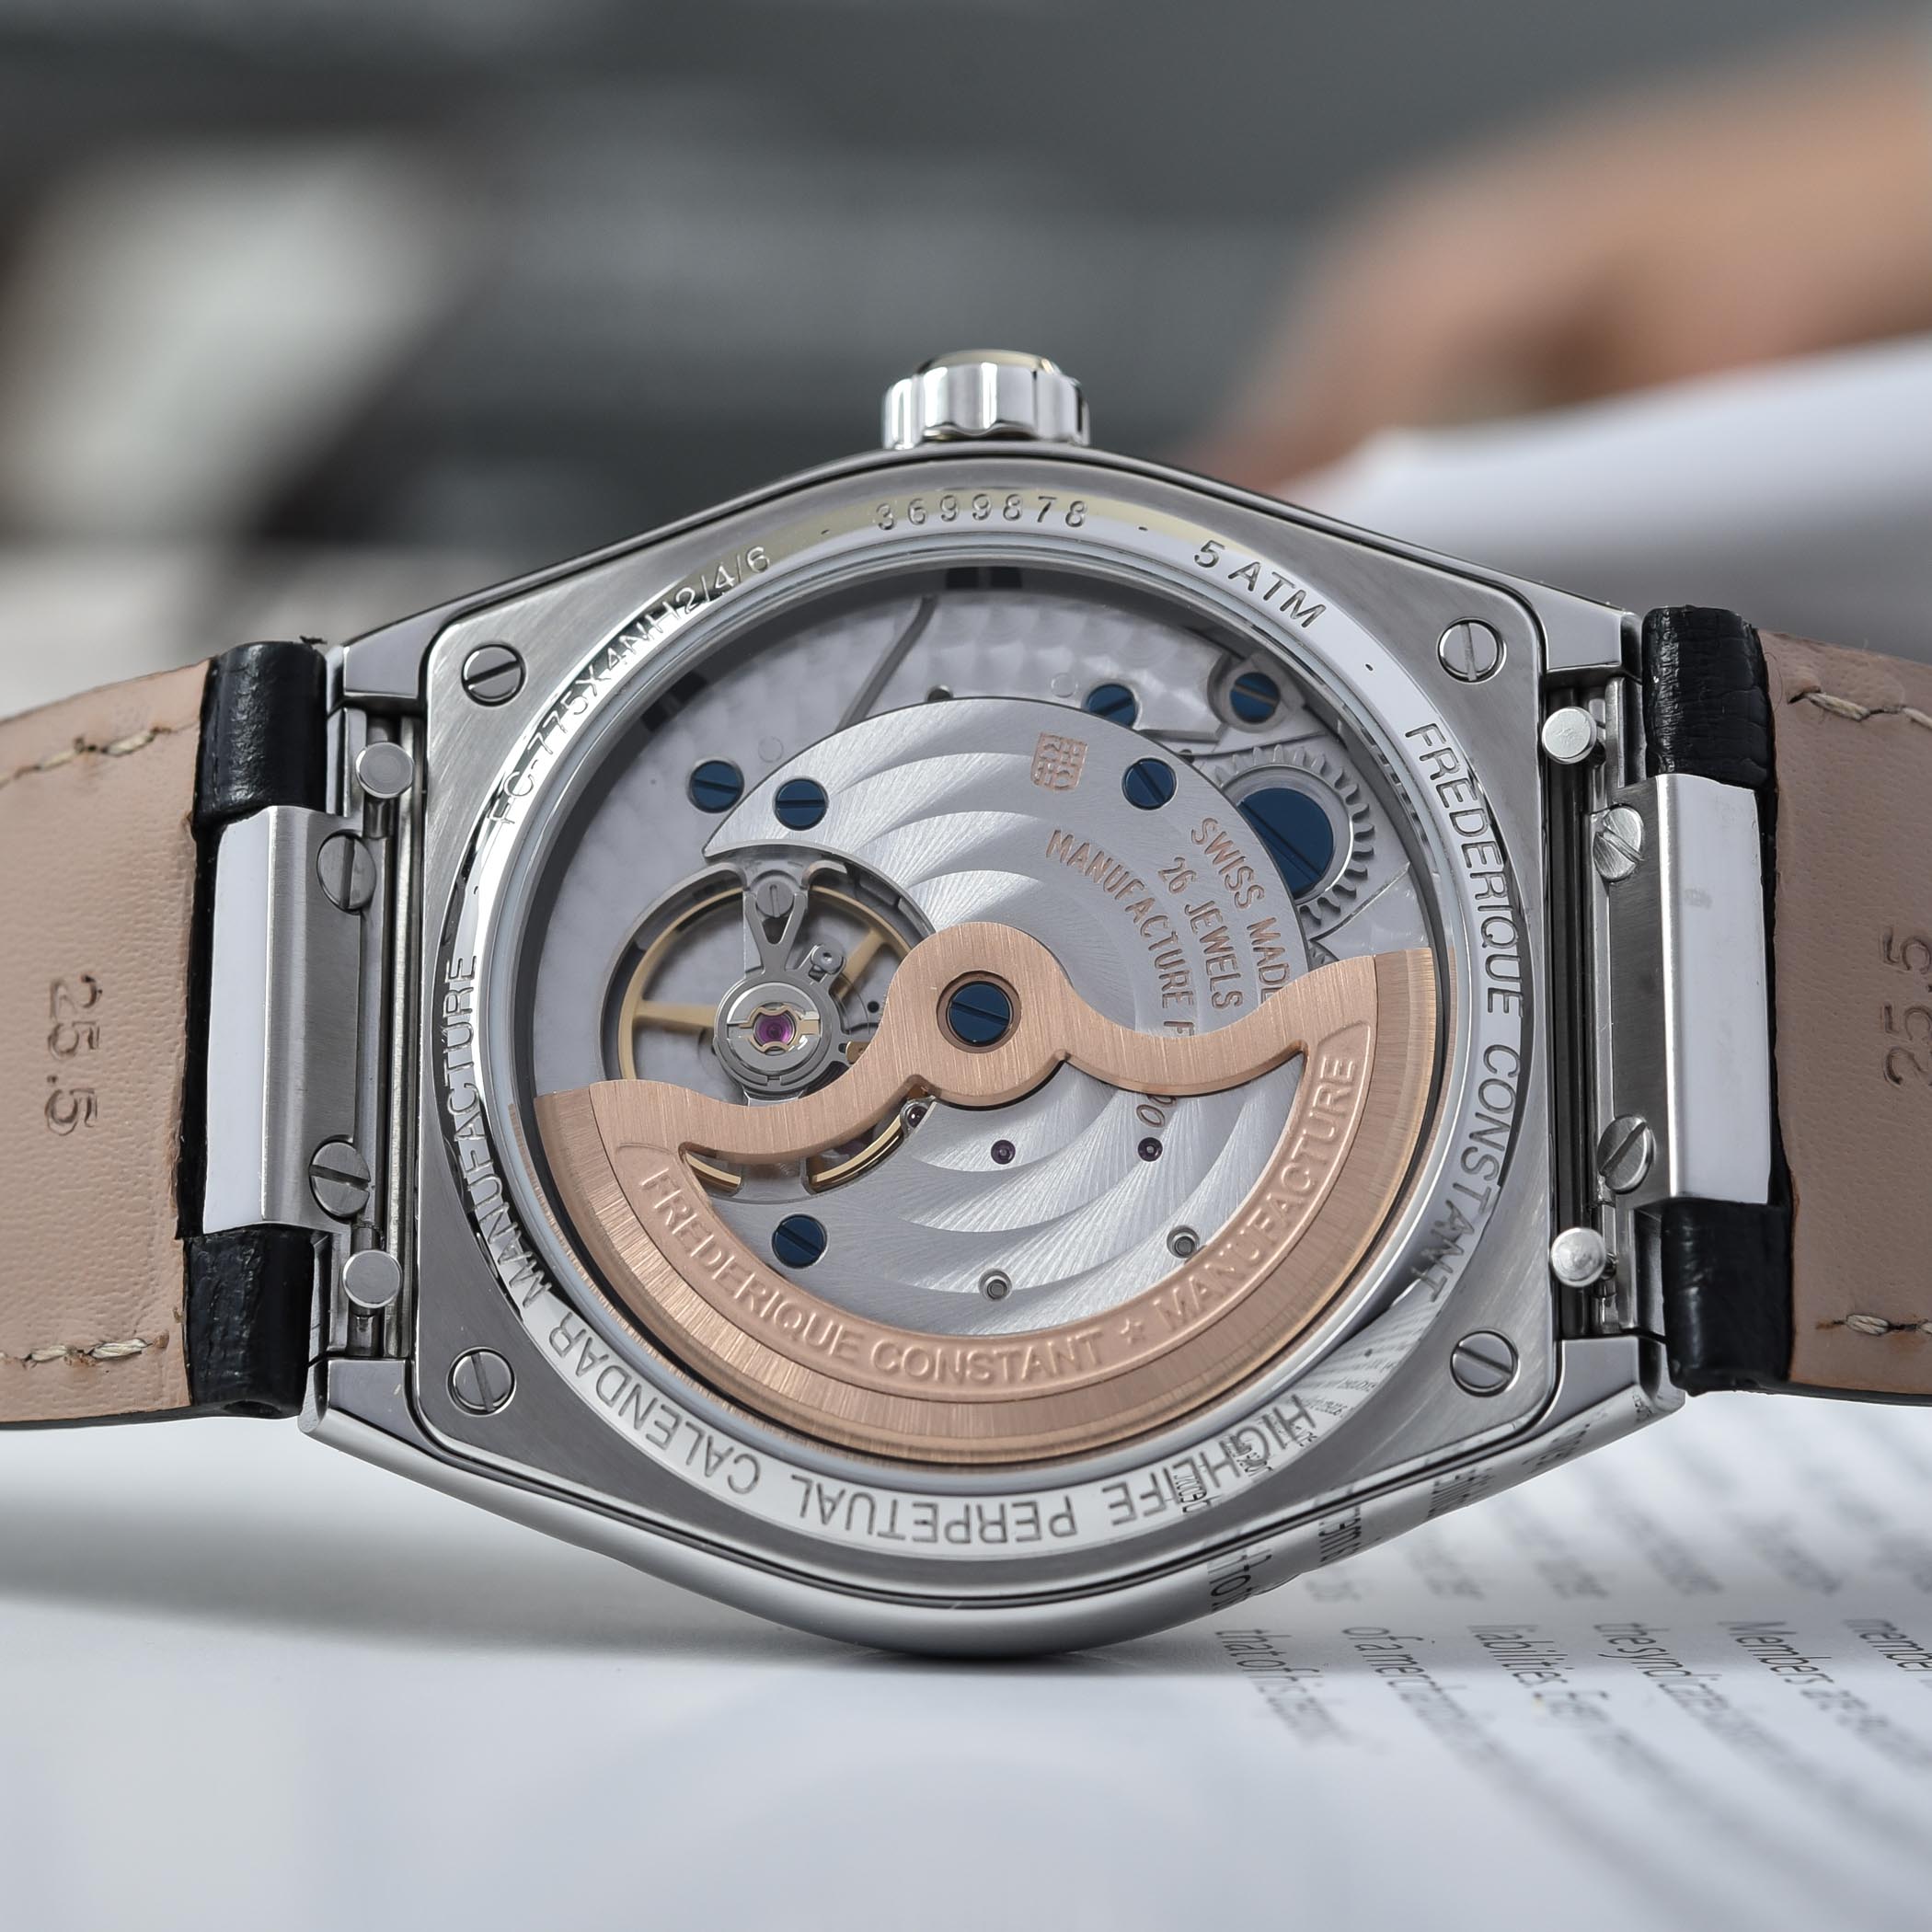 Theo đánh giá, đồng hồ đeo tay Frederique Constant mang đến vẻ đẹp hào khó của làng nghề Geneve bởi danh tiếng và thiết kế sang trọng, hiện đại